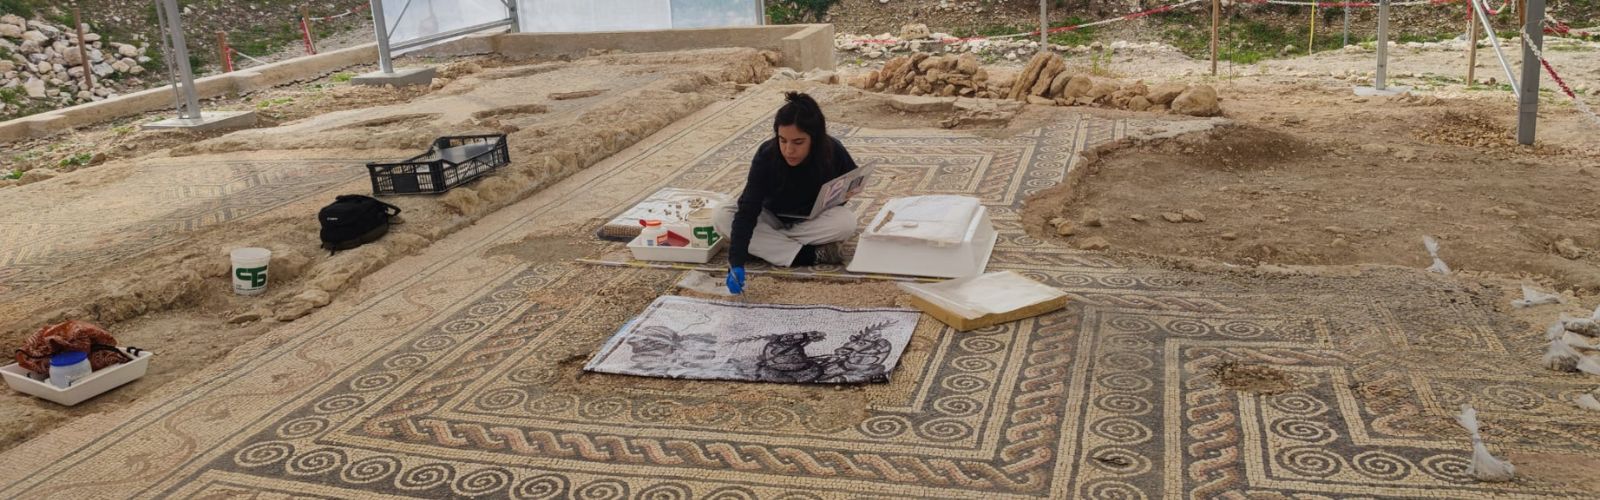 Mosaici antichi custoditi tra i vigneti